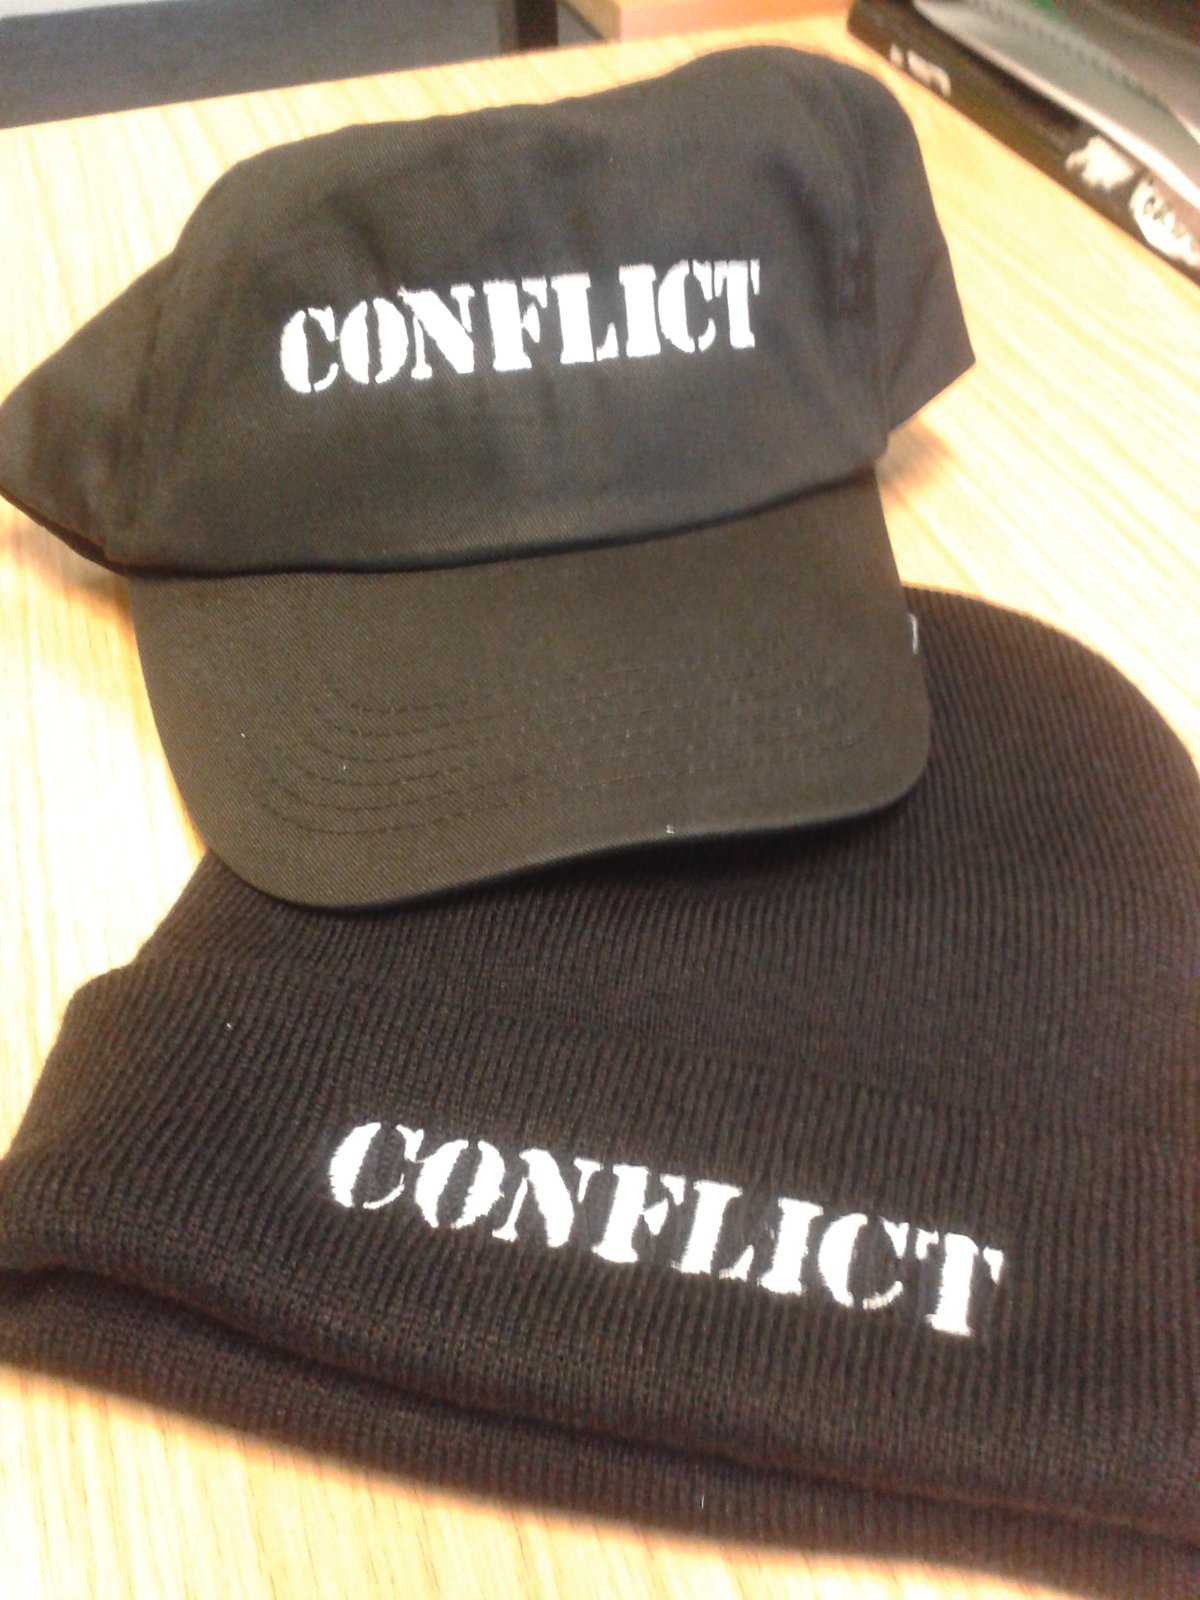 Image of Conflict Cap